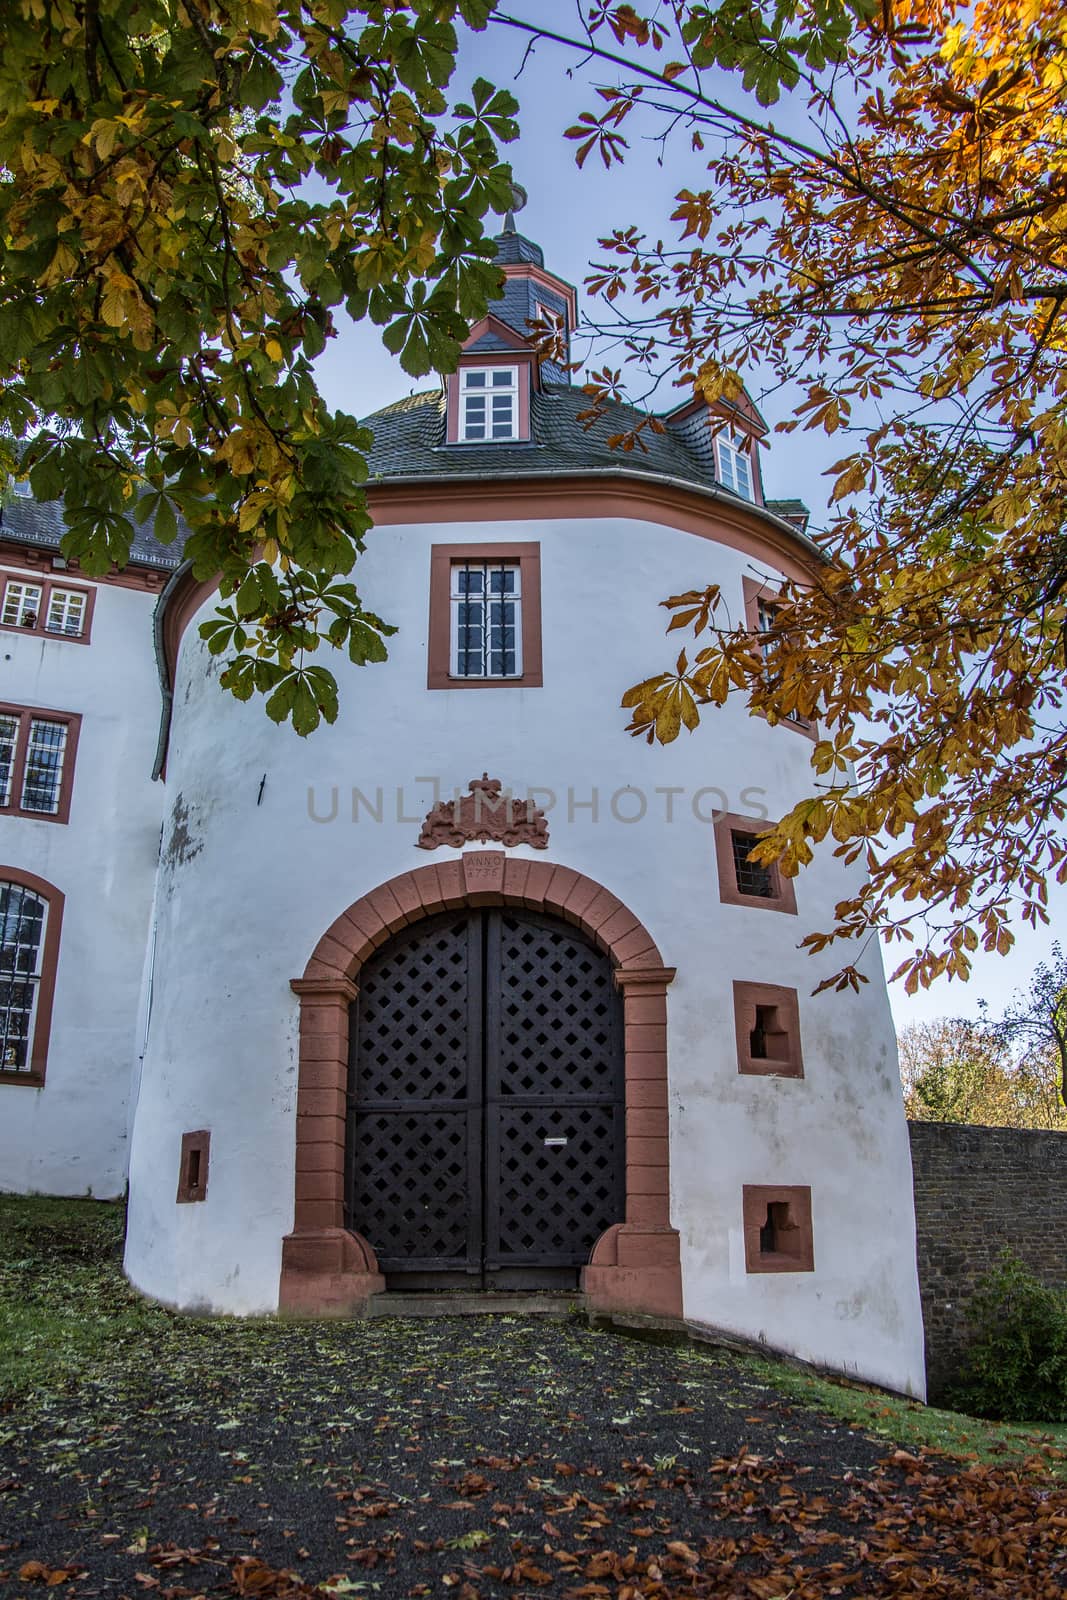 Siegen-Wittgenstein Castle in Bad Berleburg